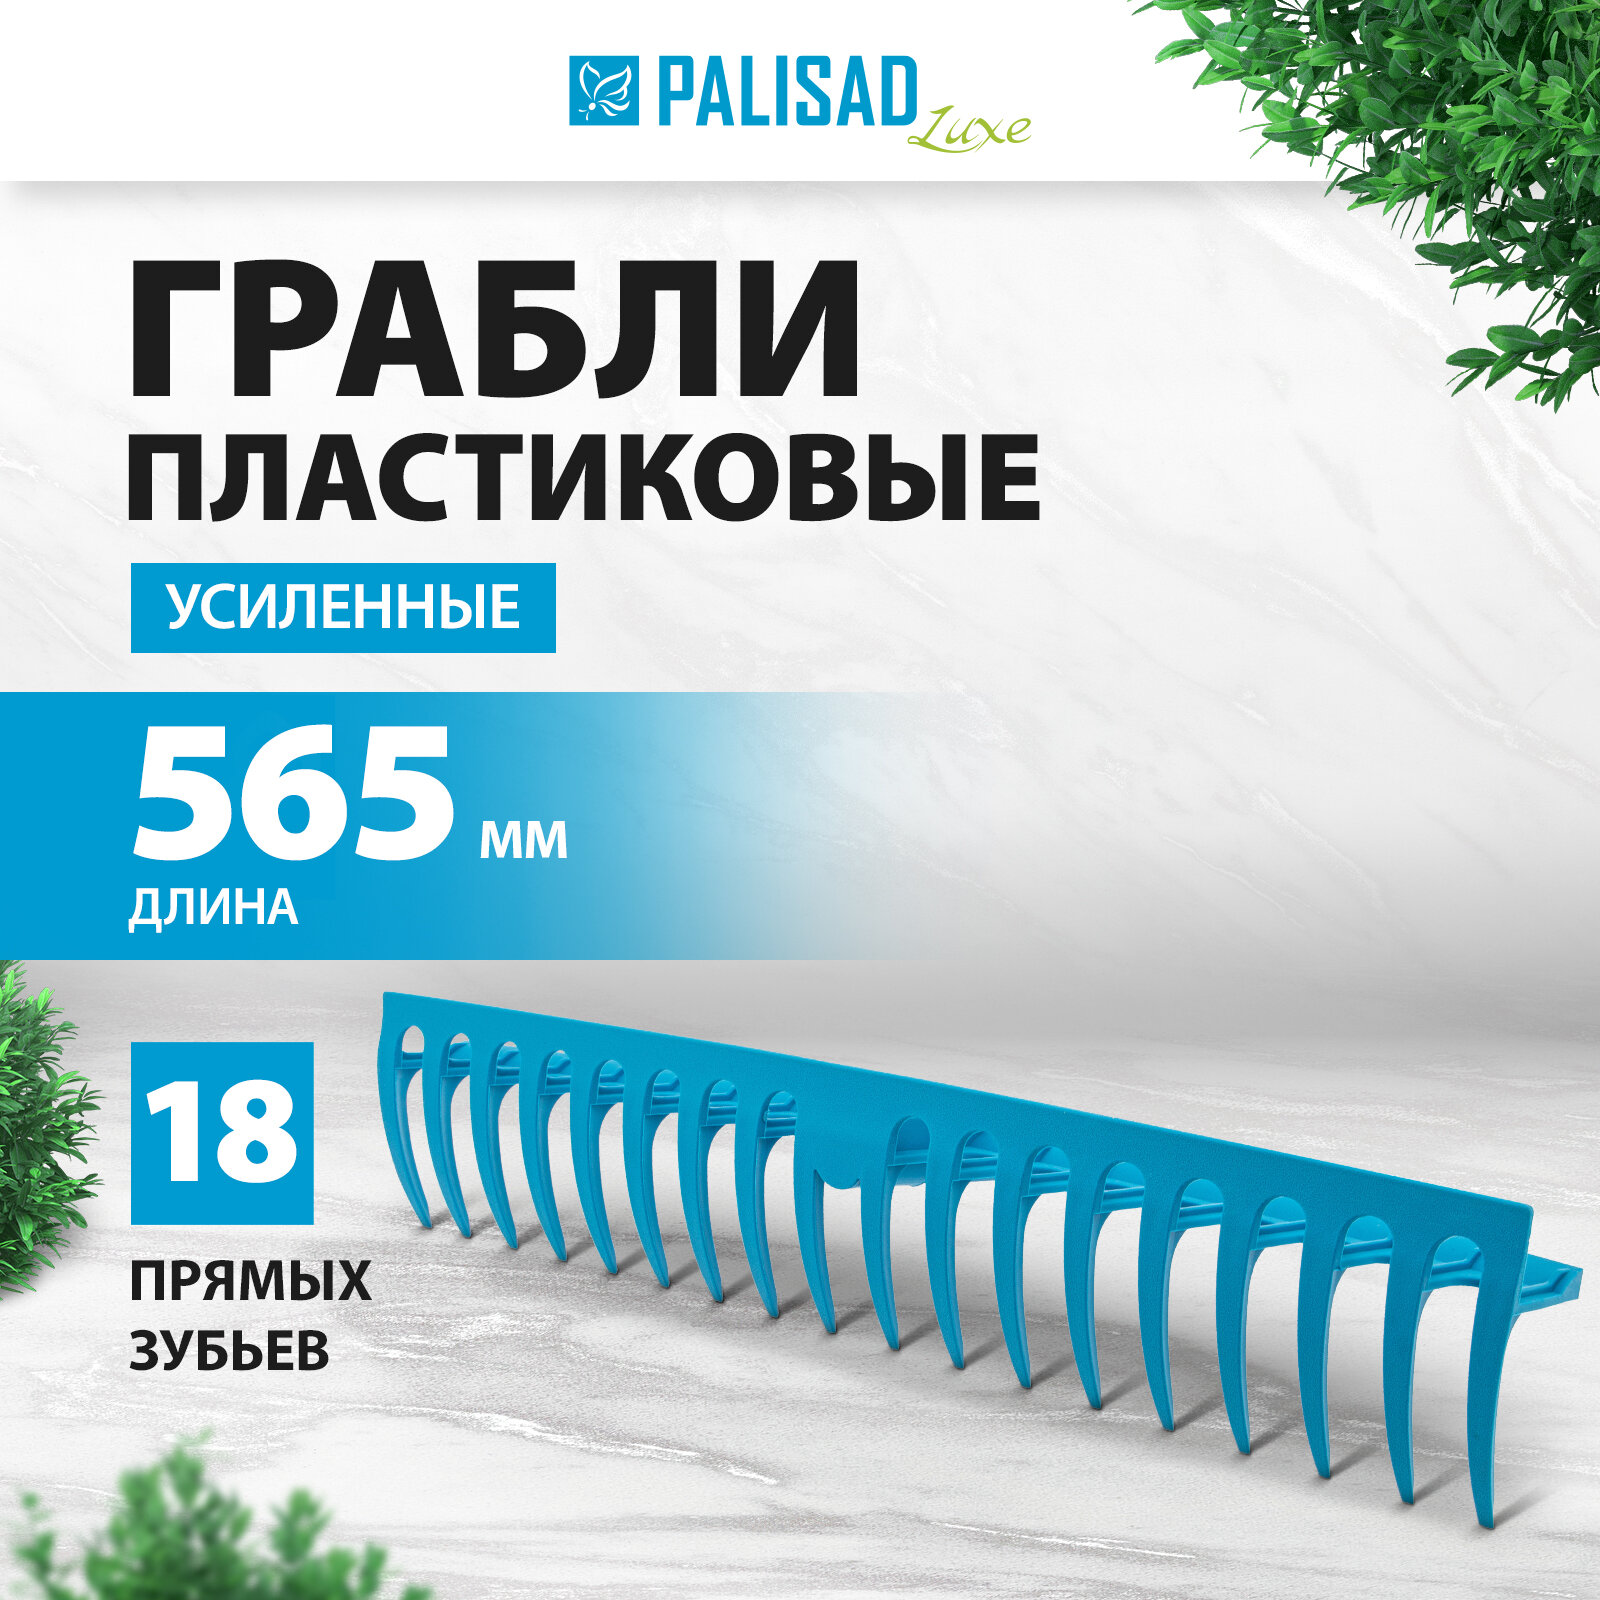 Грабли пластиковые Palisad LUXE 565 мм, 18 прямых зубьев, усиленные 61733